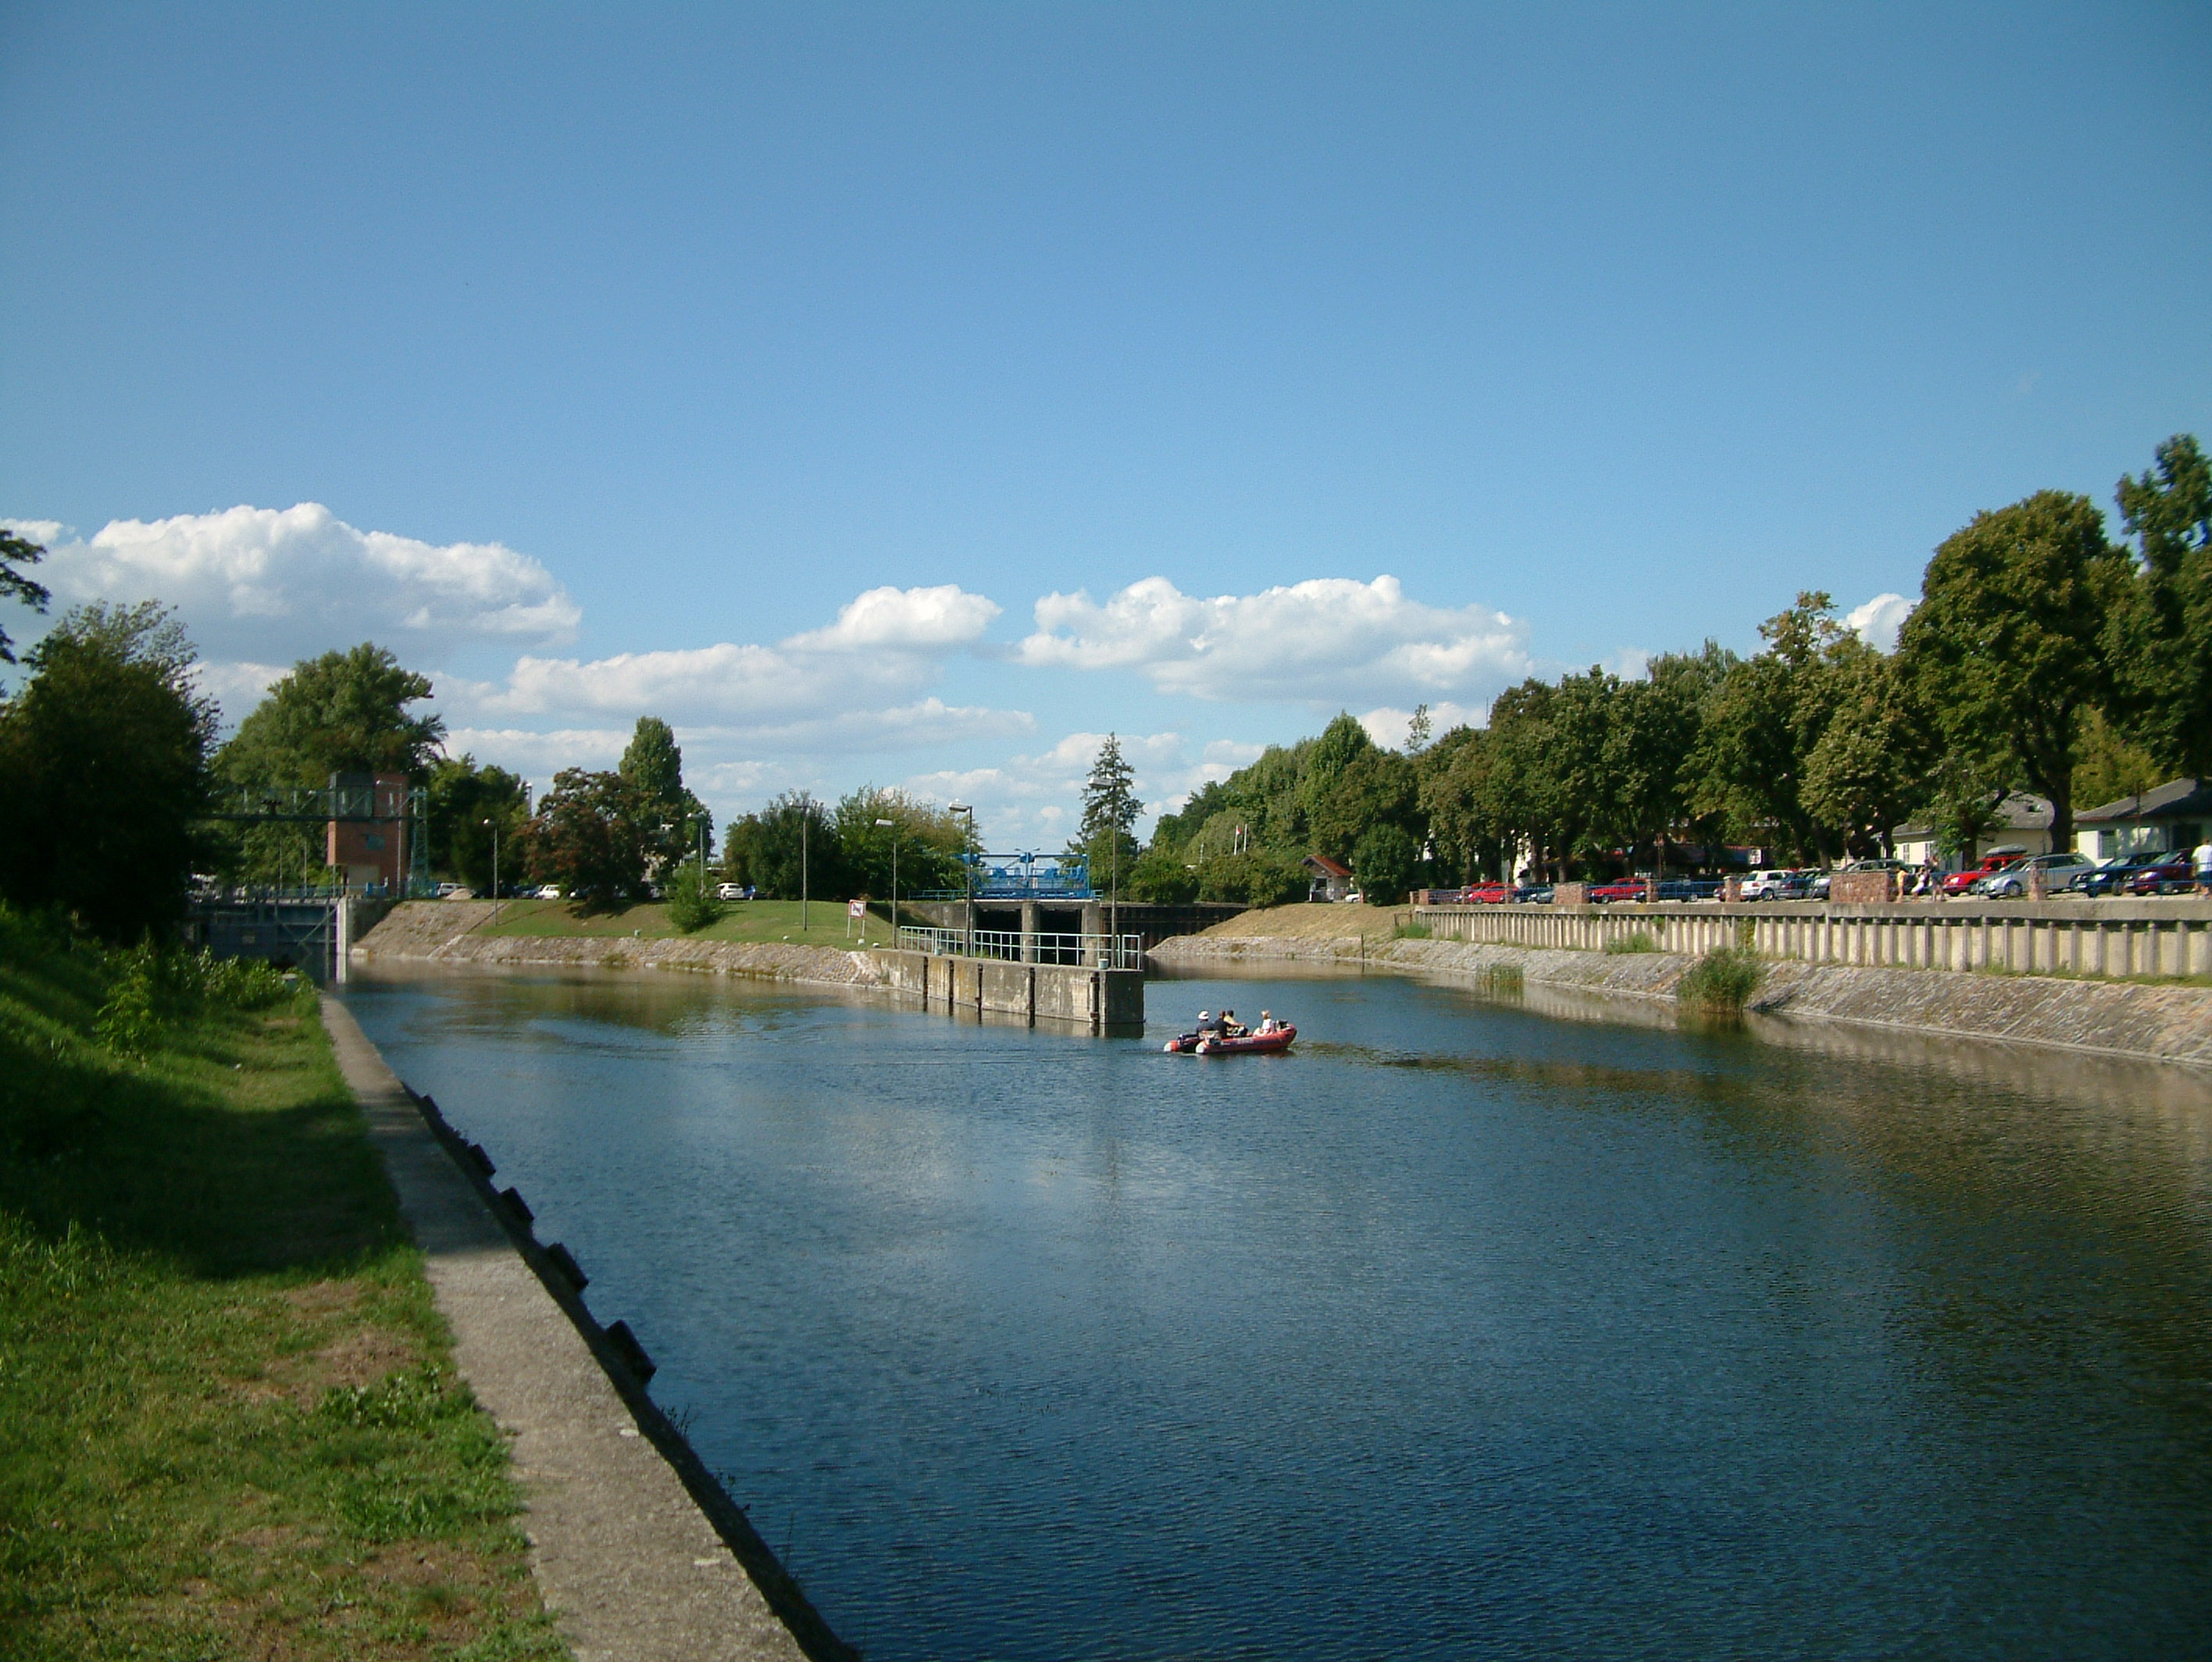 Két hétig eresztették a Balaton vizét a Sióba, ez idő alatt hajók is használhatták a csatornát a Balaton és a Duna között (fotó: Wikipedia)